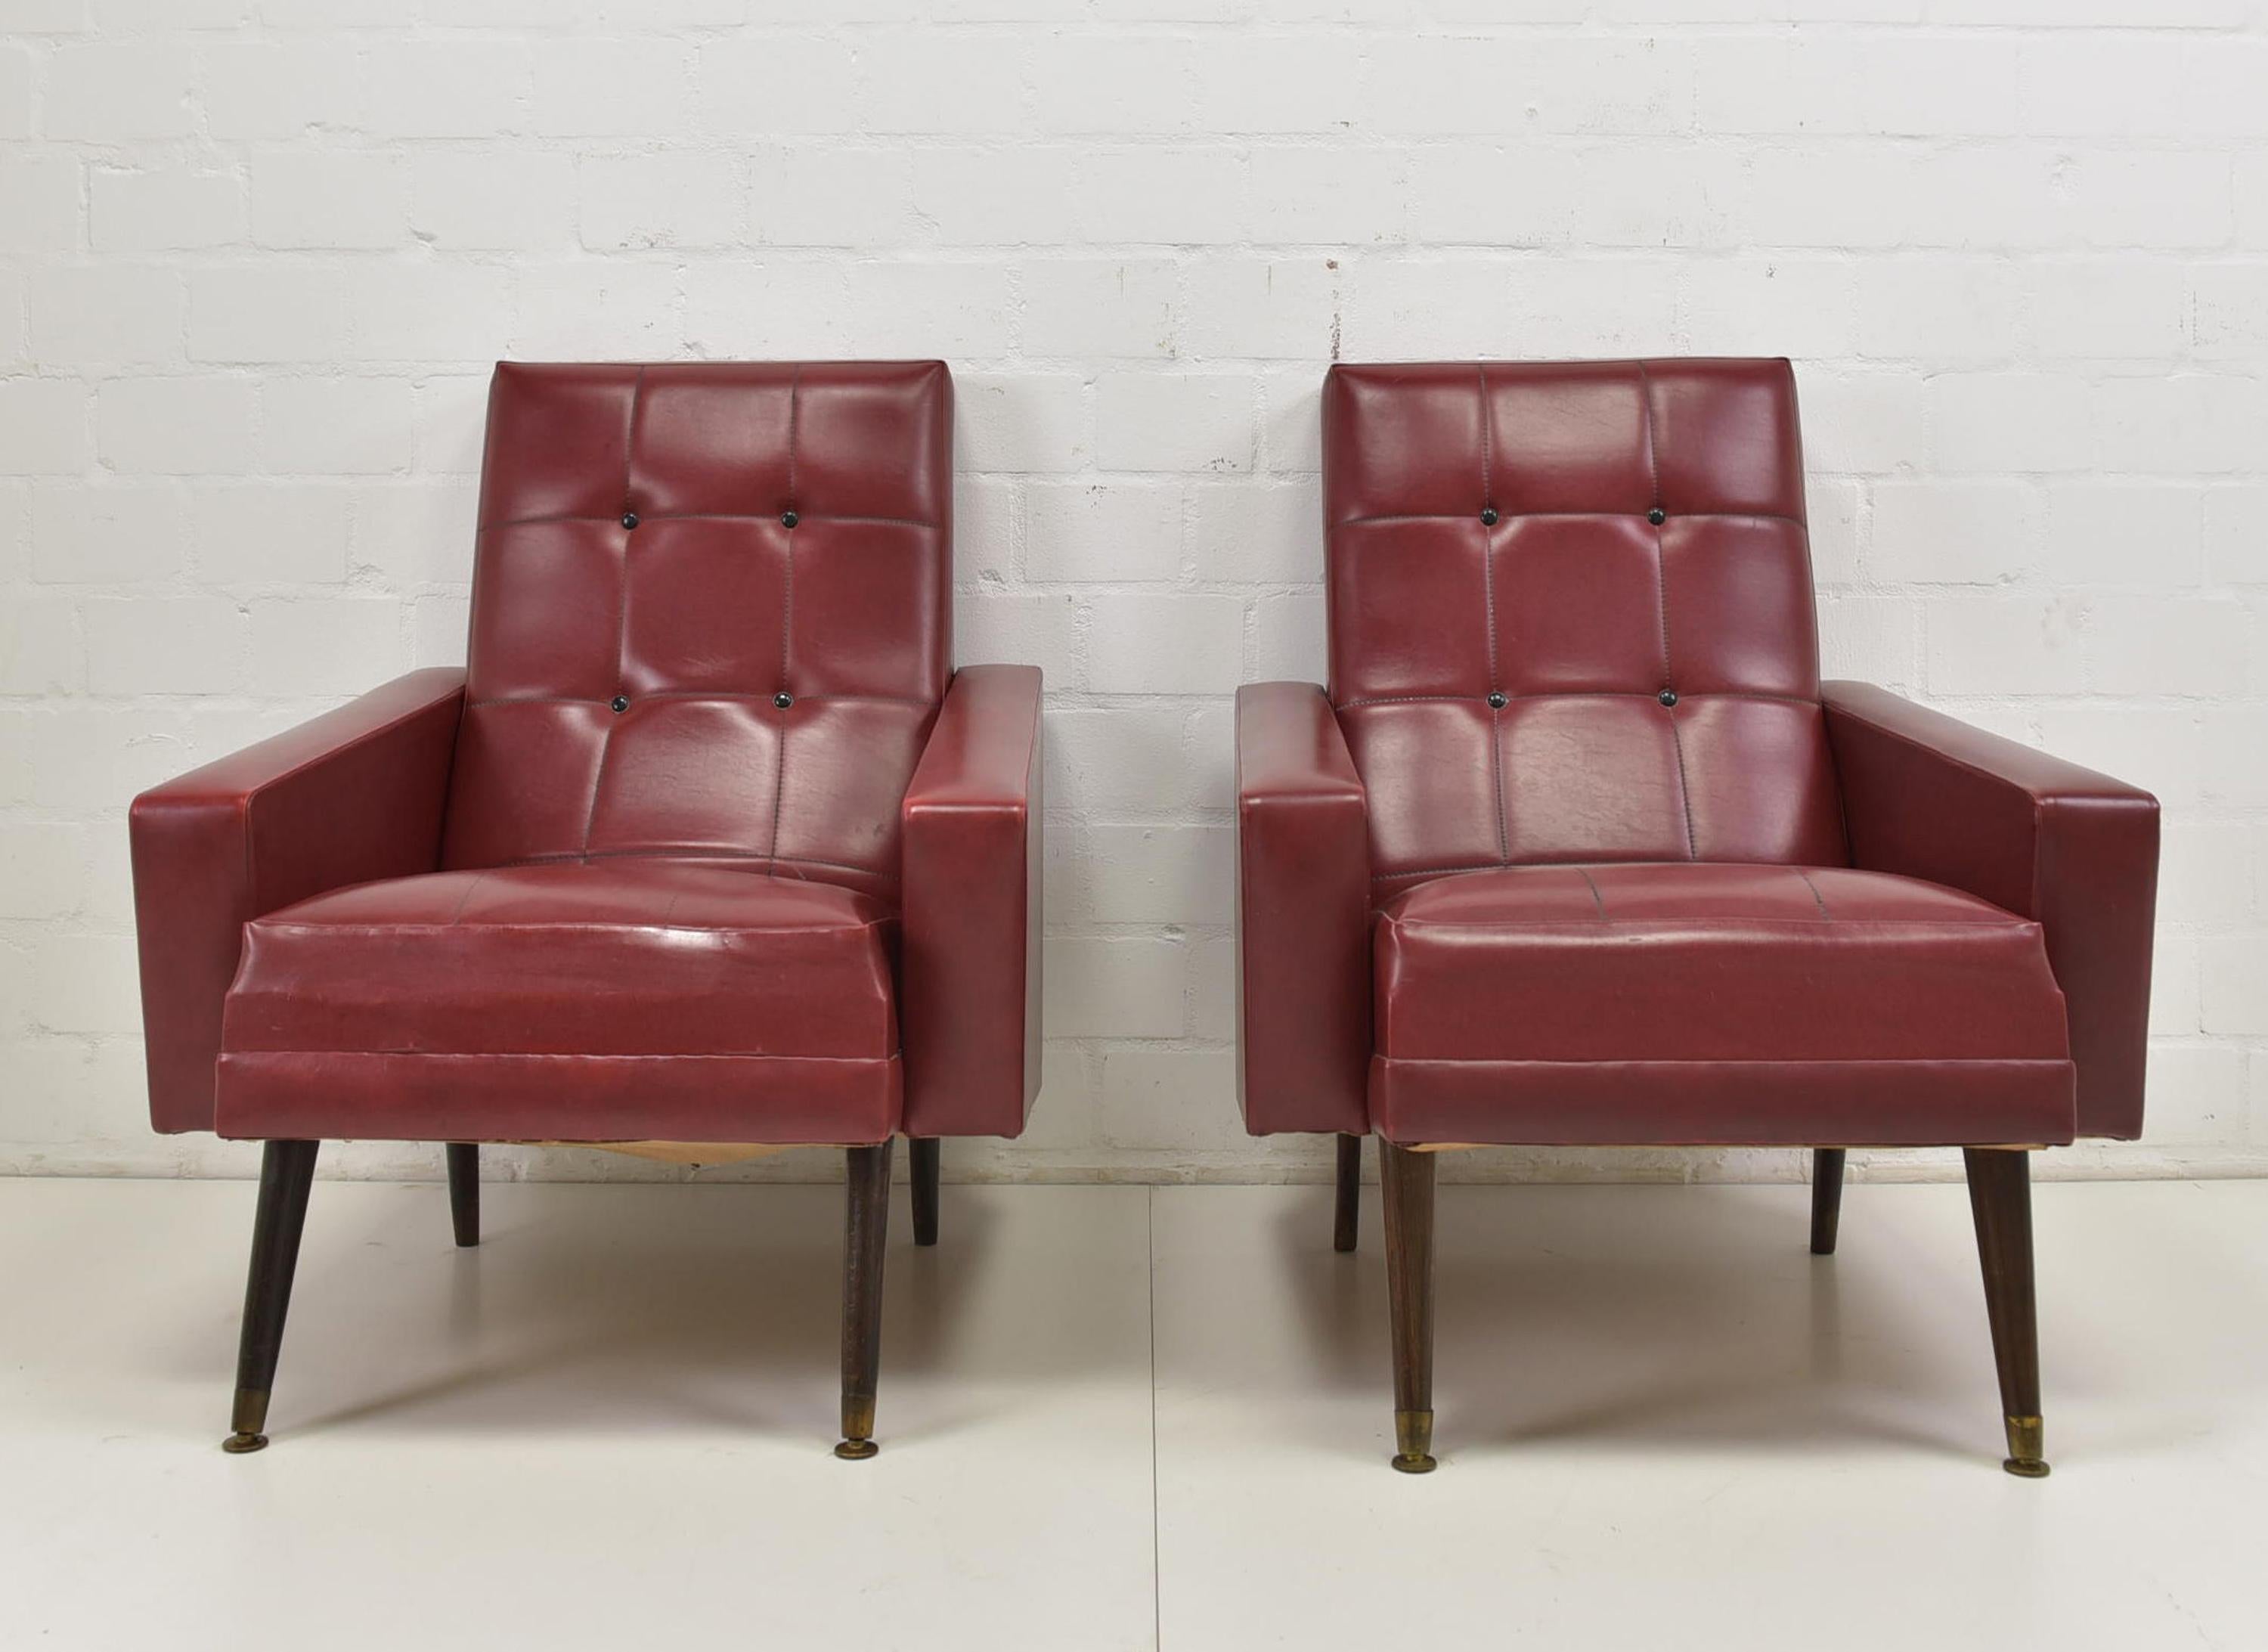 Paar Sessel 2x Lounge Chair vintage 50s 60s rot Skai Rockabilly club chairs

Merkmale:
Schwarze, schräge Beine mit Messingfüßen
Elegantes und stromlinienförmiges Design
Guter, wohnfertiger Zustand
Stabil und komfortabel

Zusätzliche